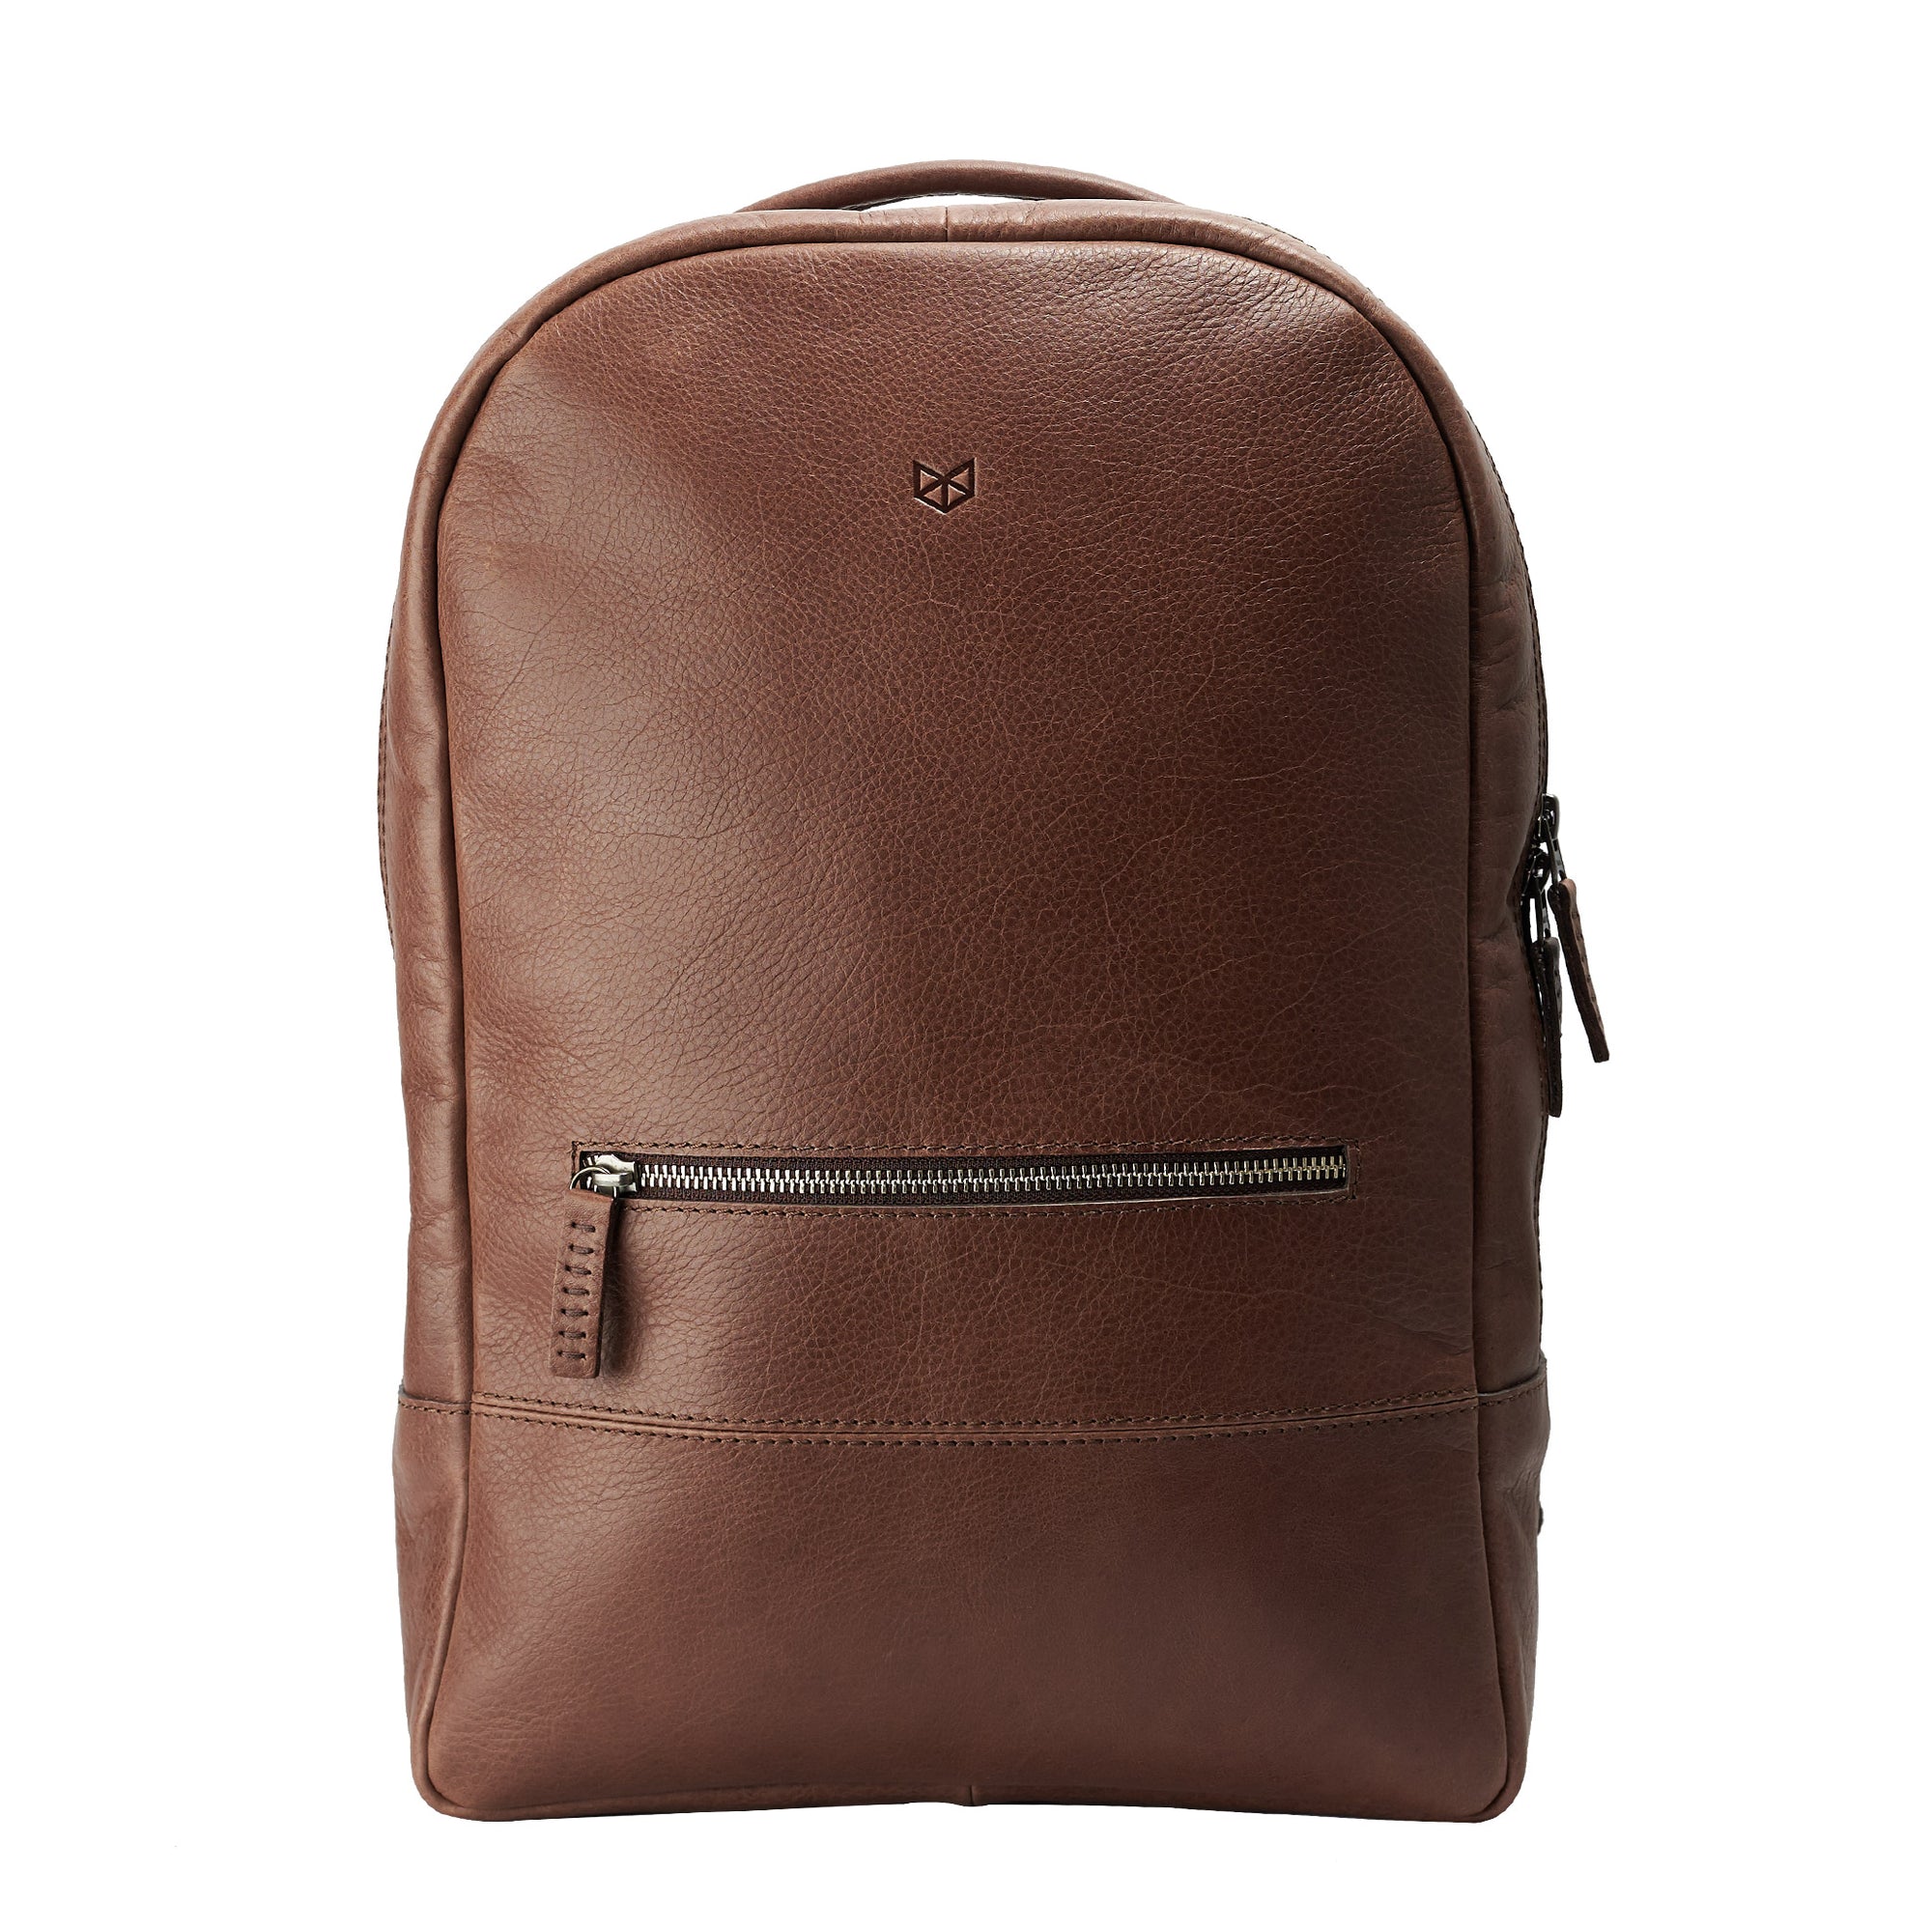 Brown. Bisonte Backpack Rucksack by Capra Leather